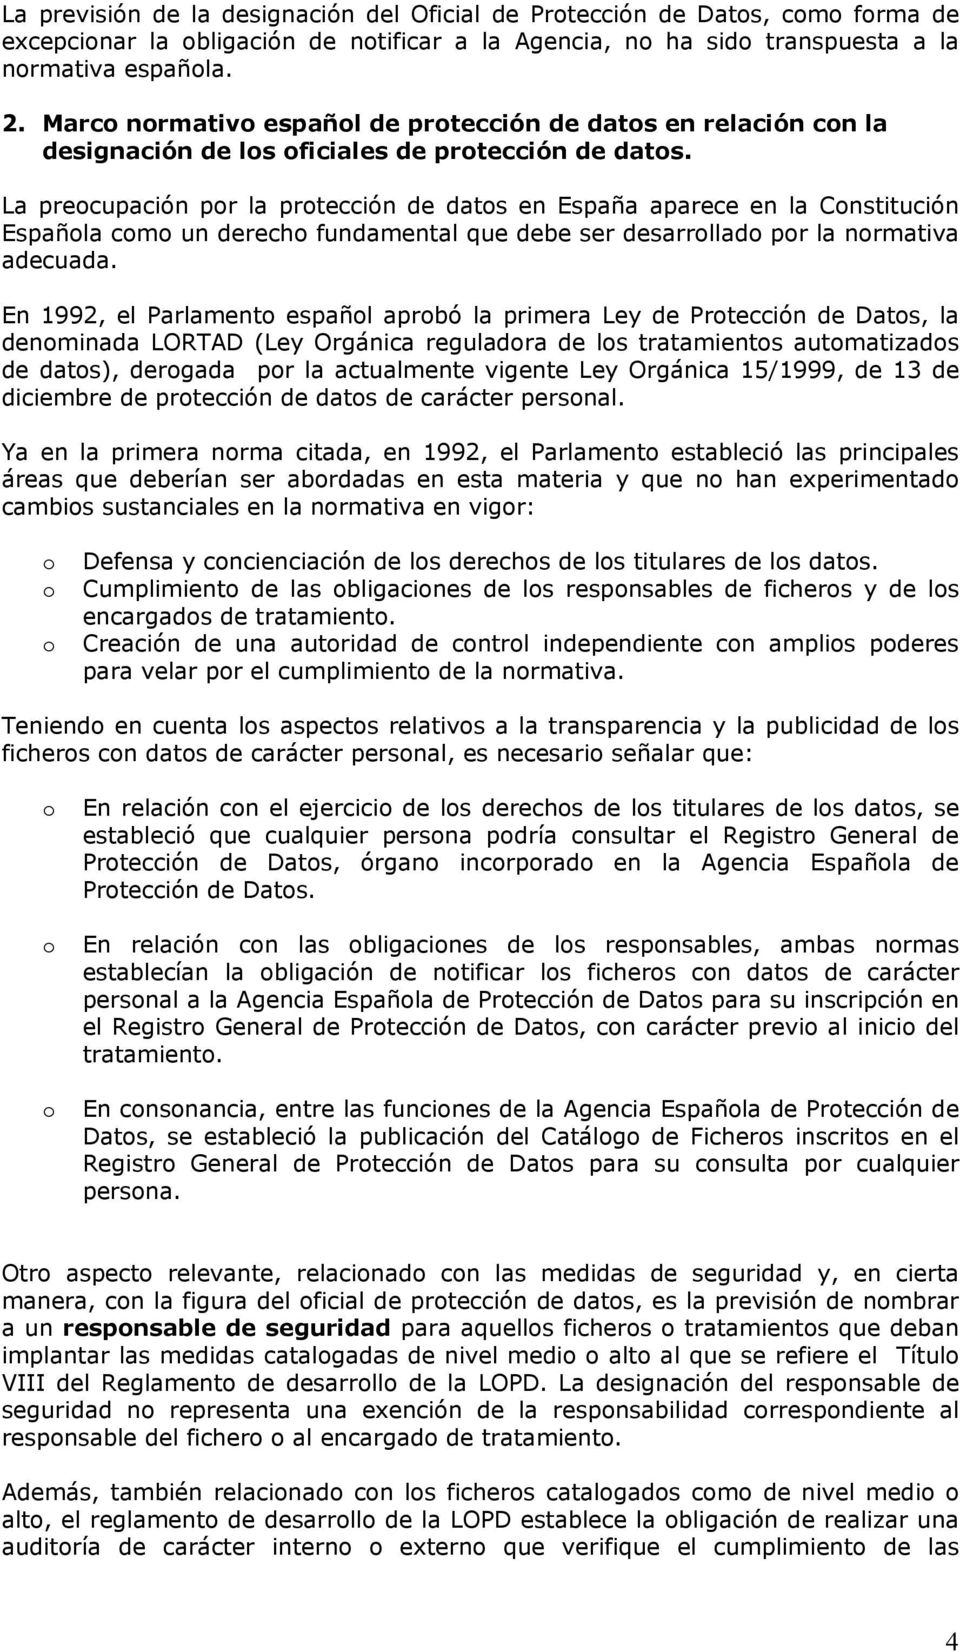 La precupación pr la prtección de dats en España aparece en la Cnstitución Españla cm un derech fundamental que debe ser desarrllad pr la nrmativa adecuada.